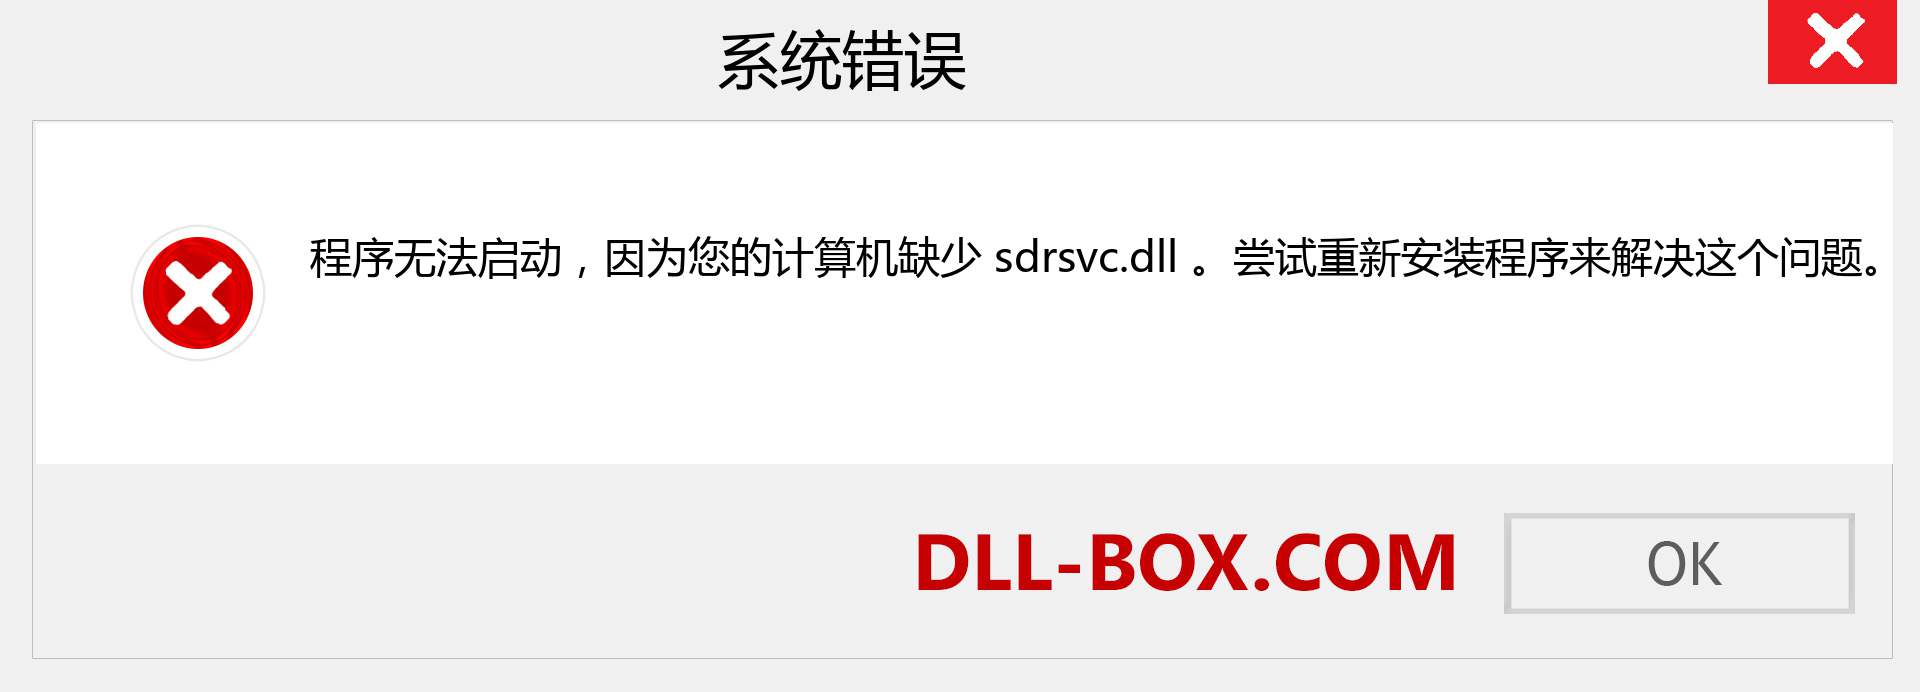 sdrsvc.dll 文件丢失？。 适用于 Windows 7、8、10 的下载 - 修复 Windows、照片、图像上的 sdrsvc dll 丢失错误